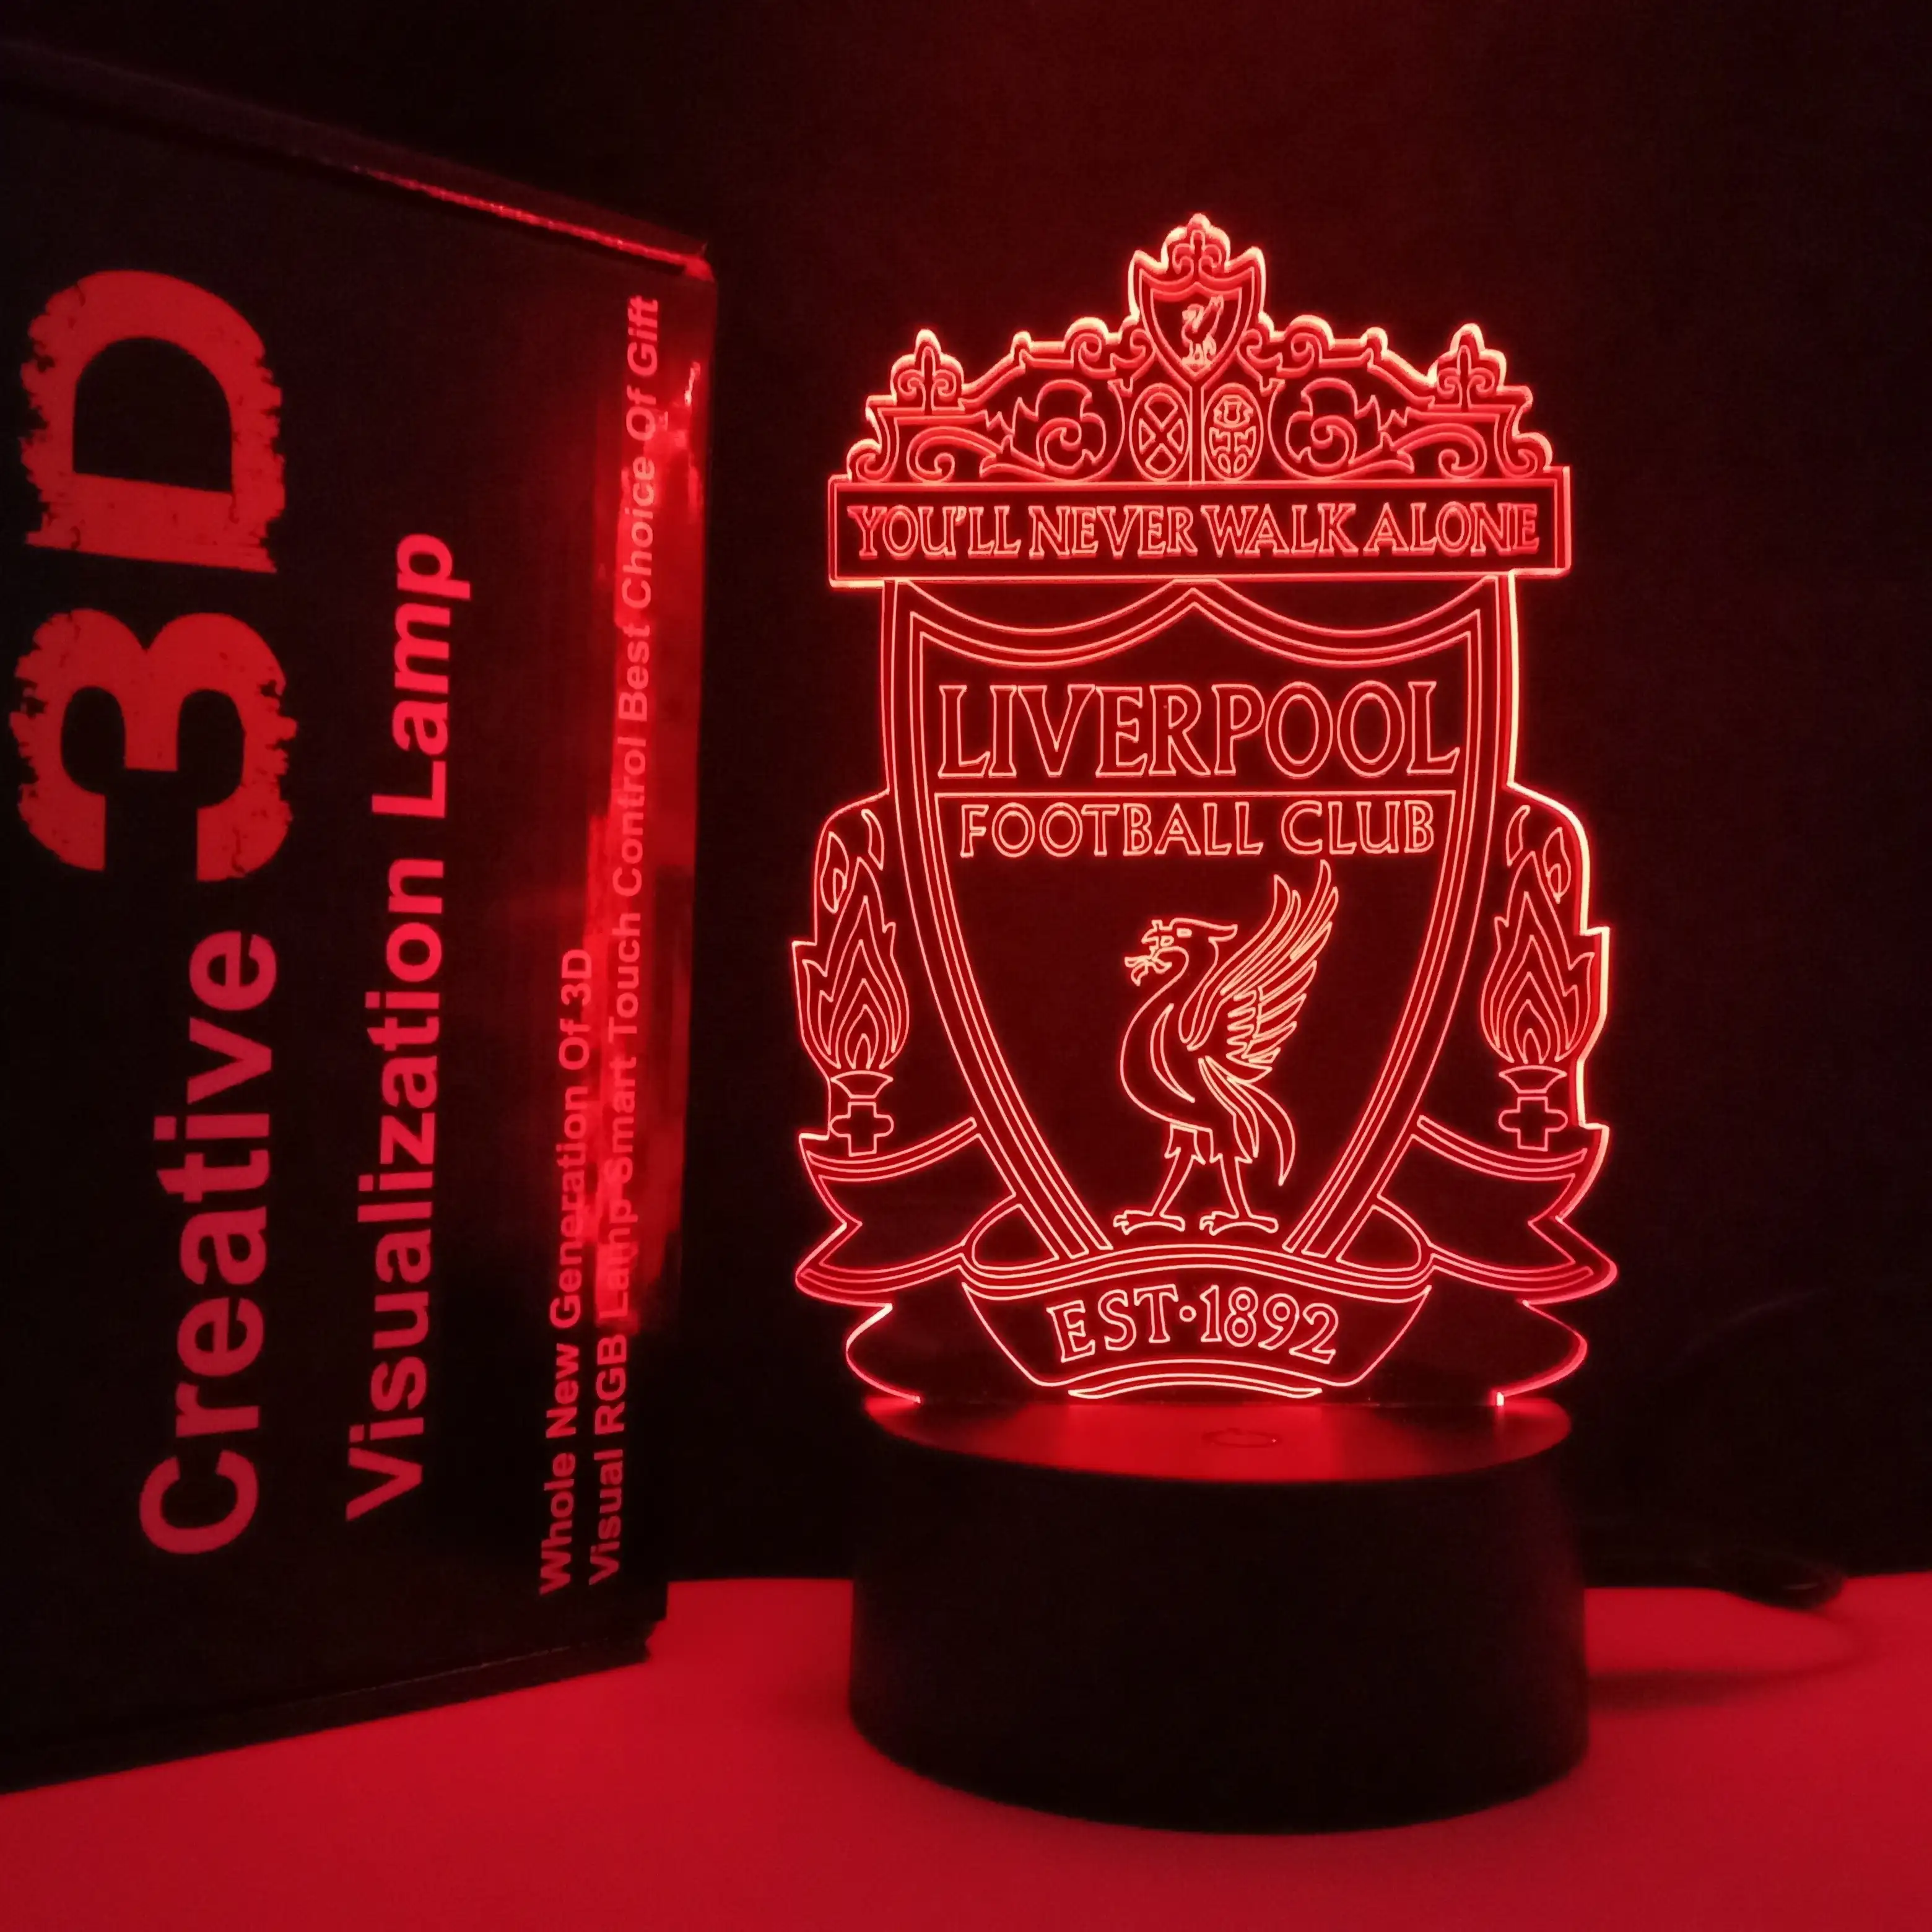 Đèn Led Acrylic Câu Lạc Bộ Liverpool, Đèn Ngủ Hình Cá Heo 3d, Đèn Led Bóng Đá 3d Ảo Ảnh Chất Lượng Cao